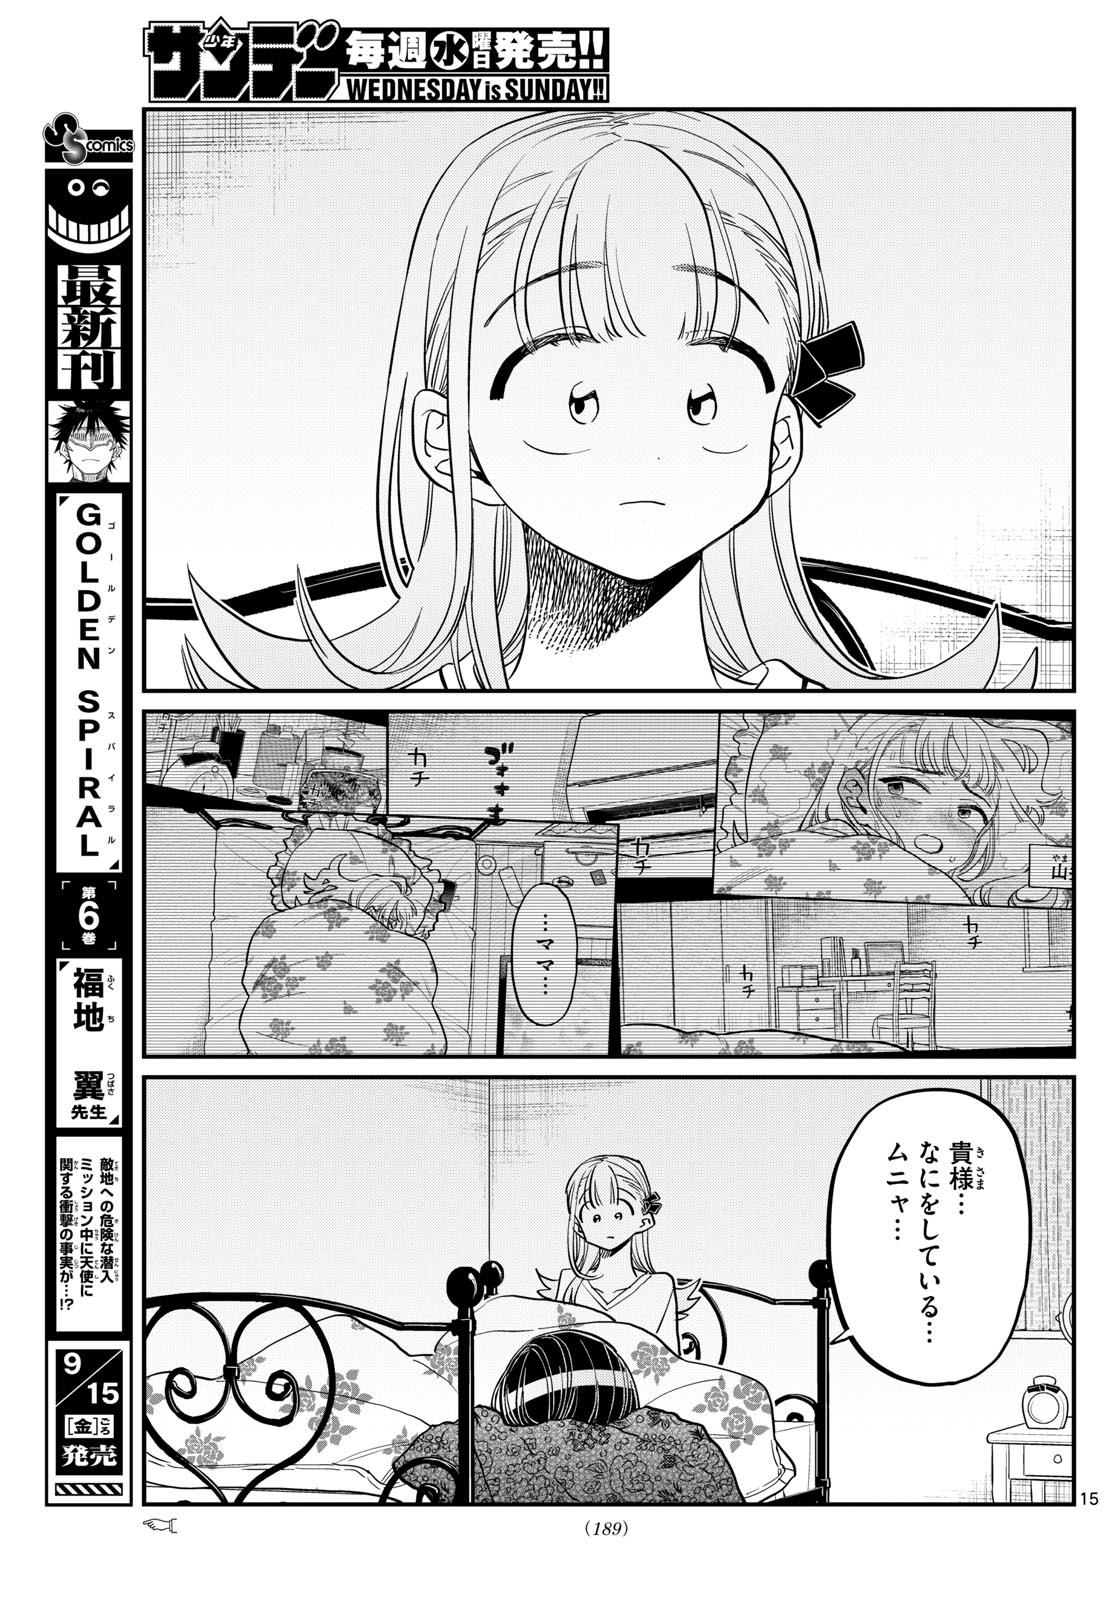 Komi-san wa Komyushou Desu Manga Chapter 419